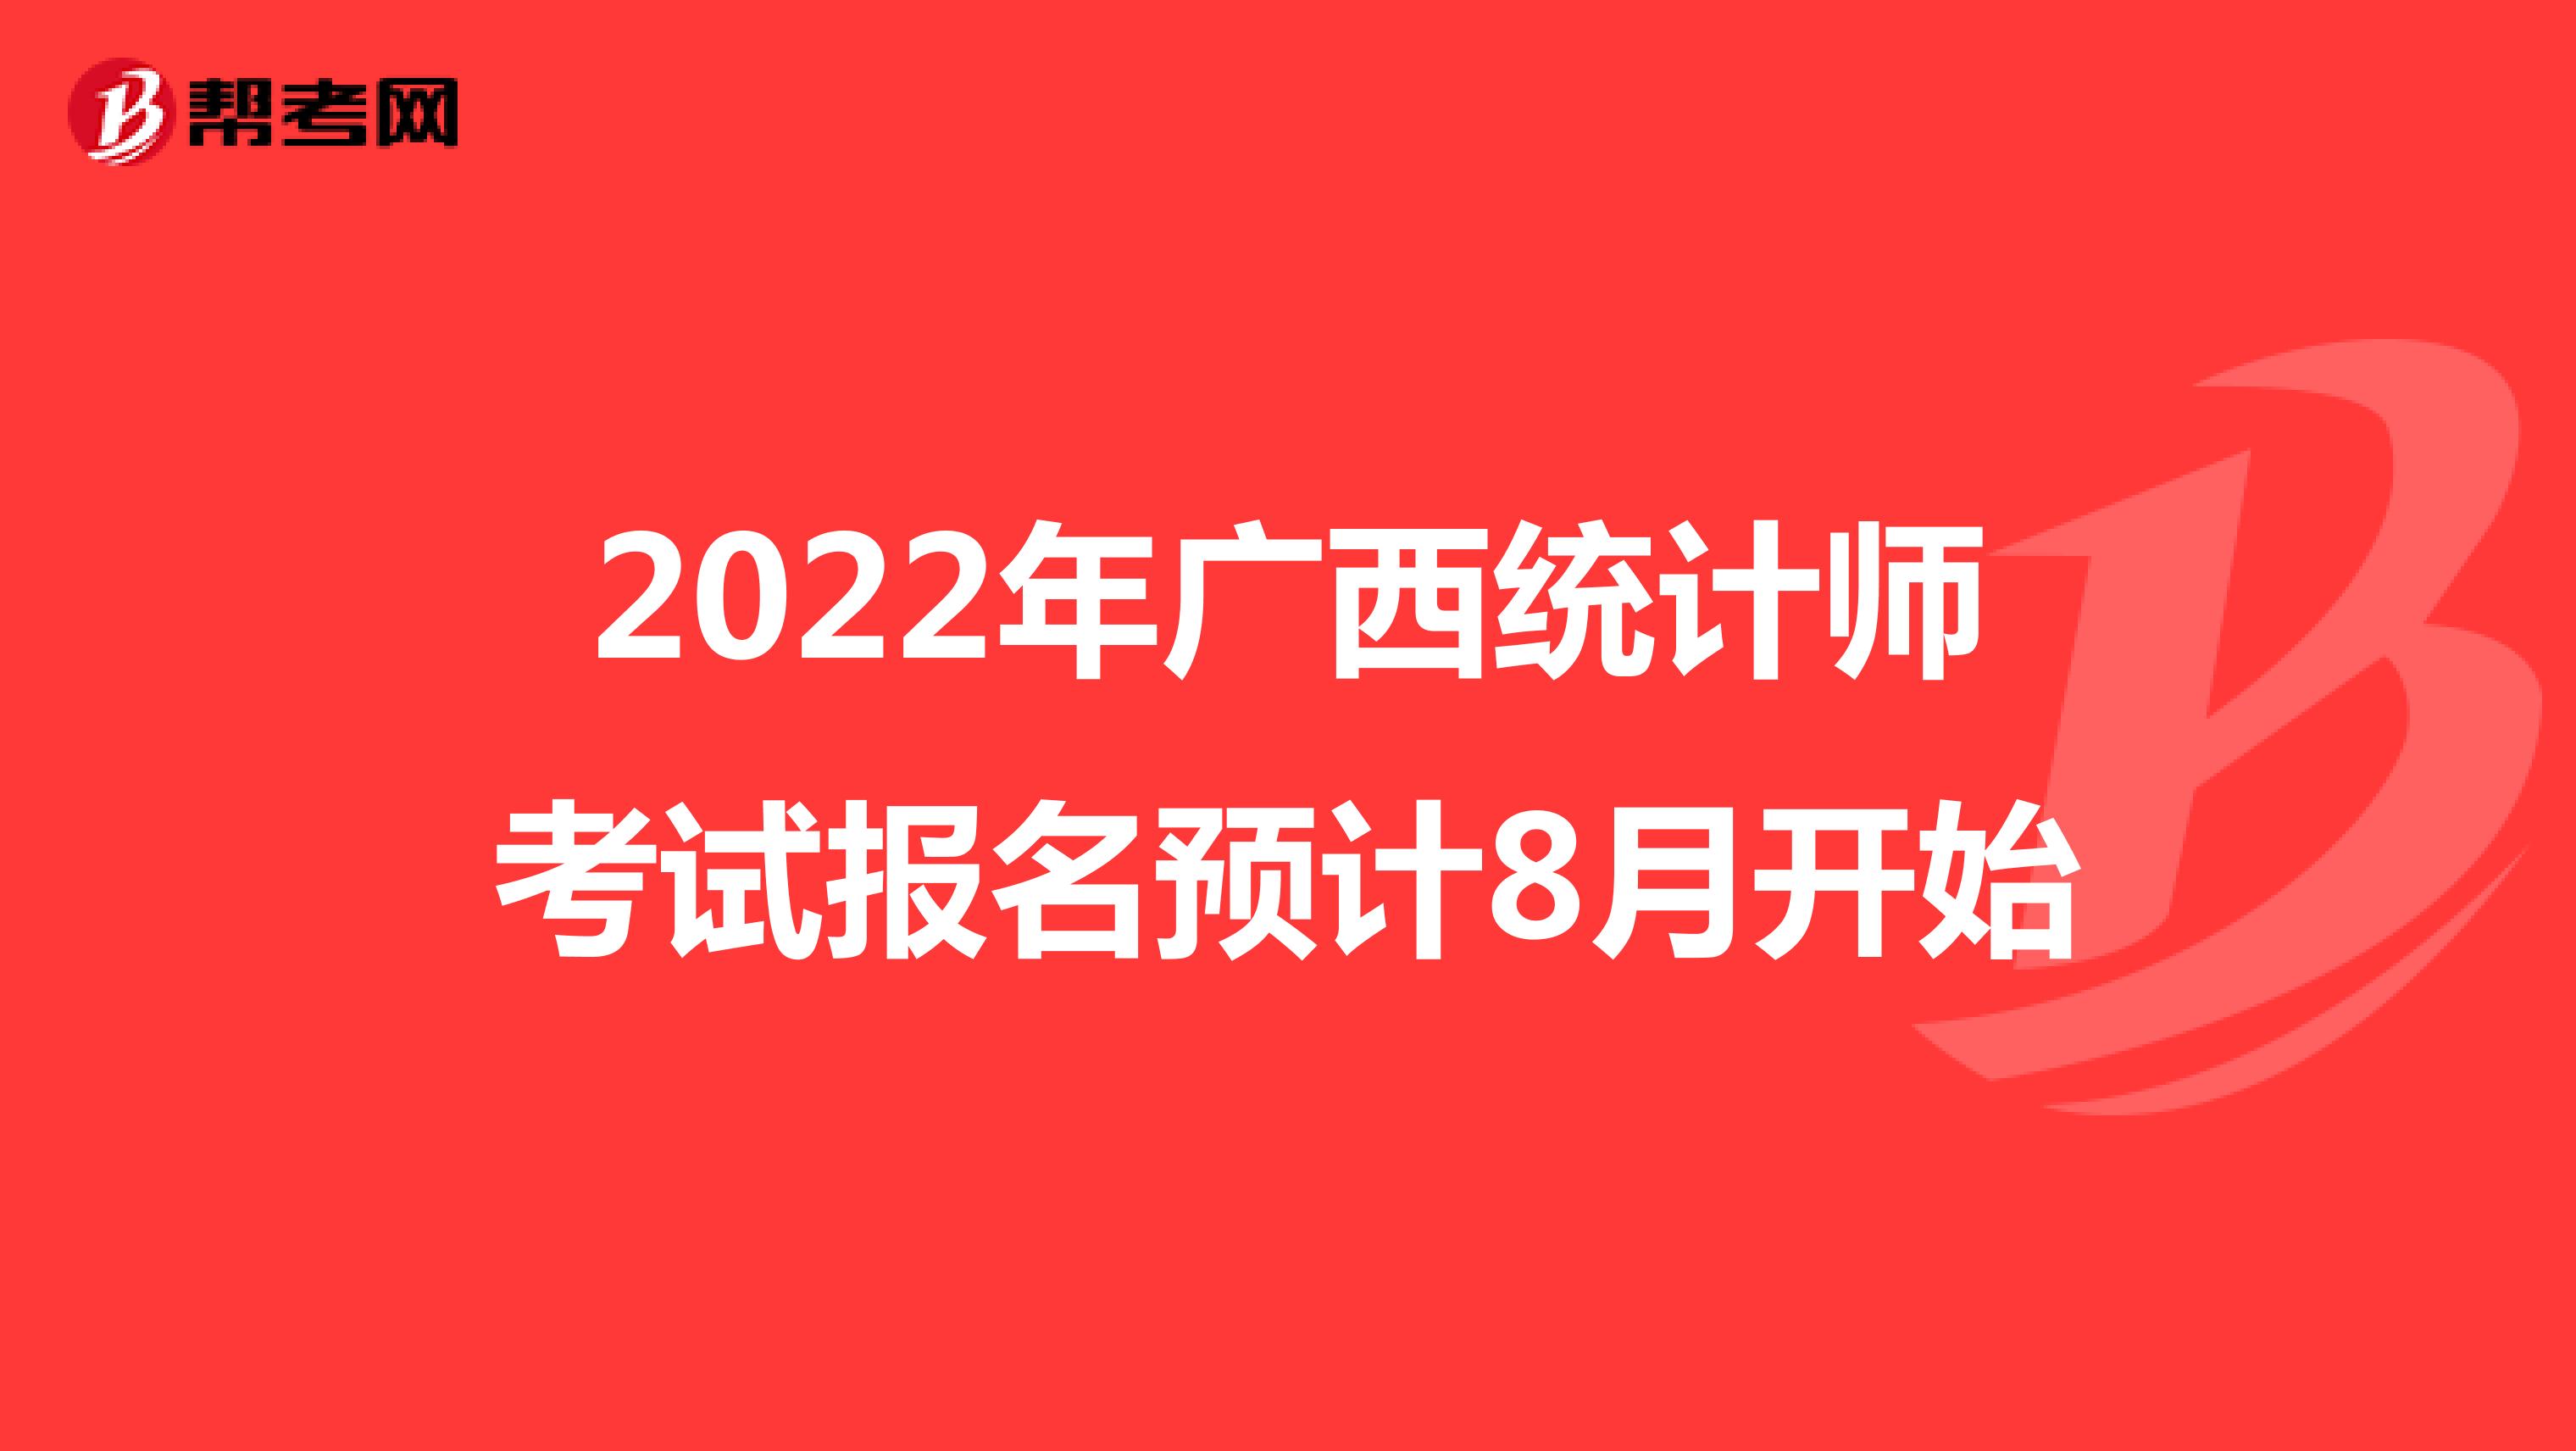 2022年广西统计师考试报名预计8月开始